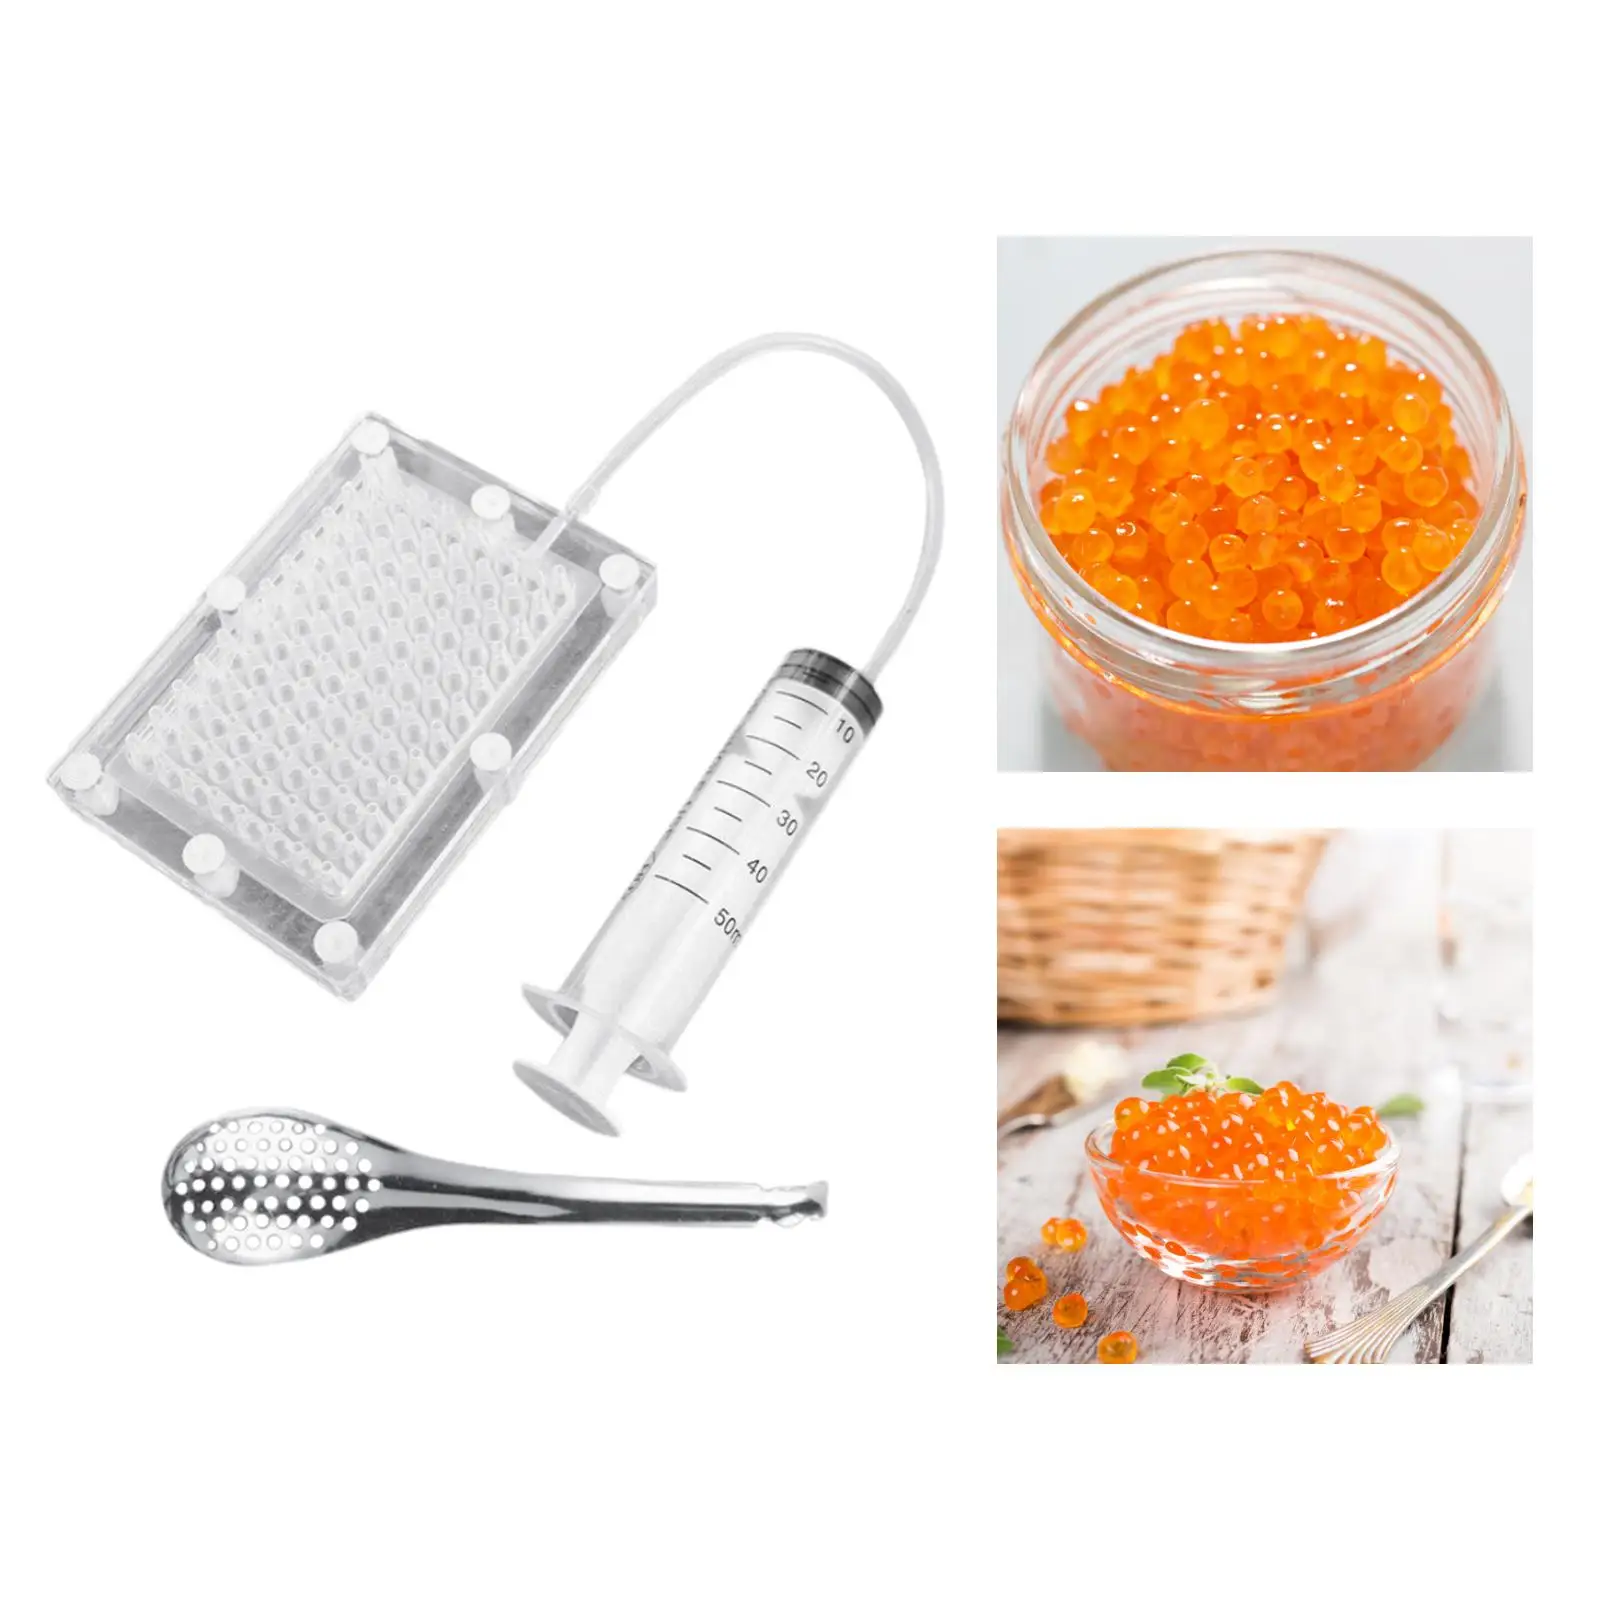  Maker 96-Holes Roe   Ggastronomy Kit Cuisine Spherification Kit  Strainer  Filter Kit Kitchen Tools